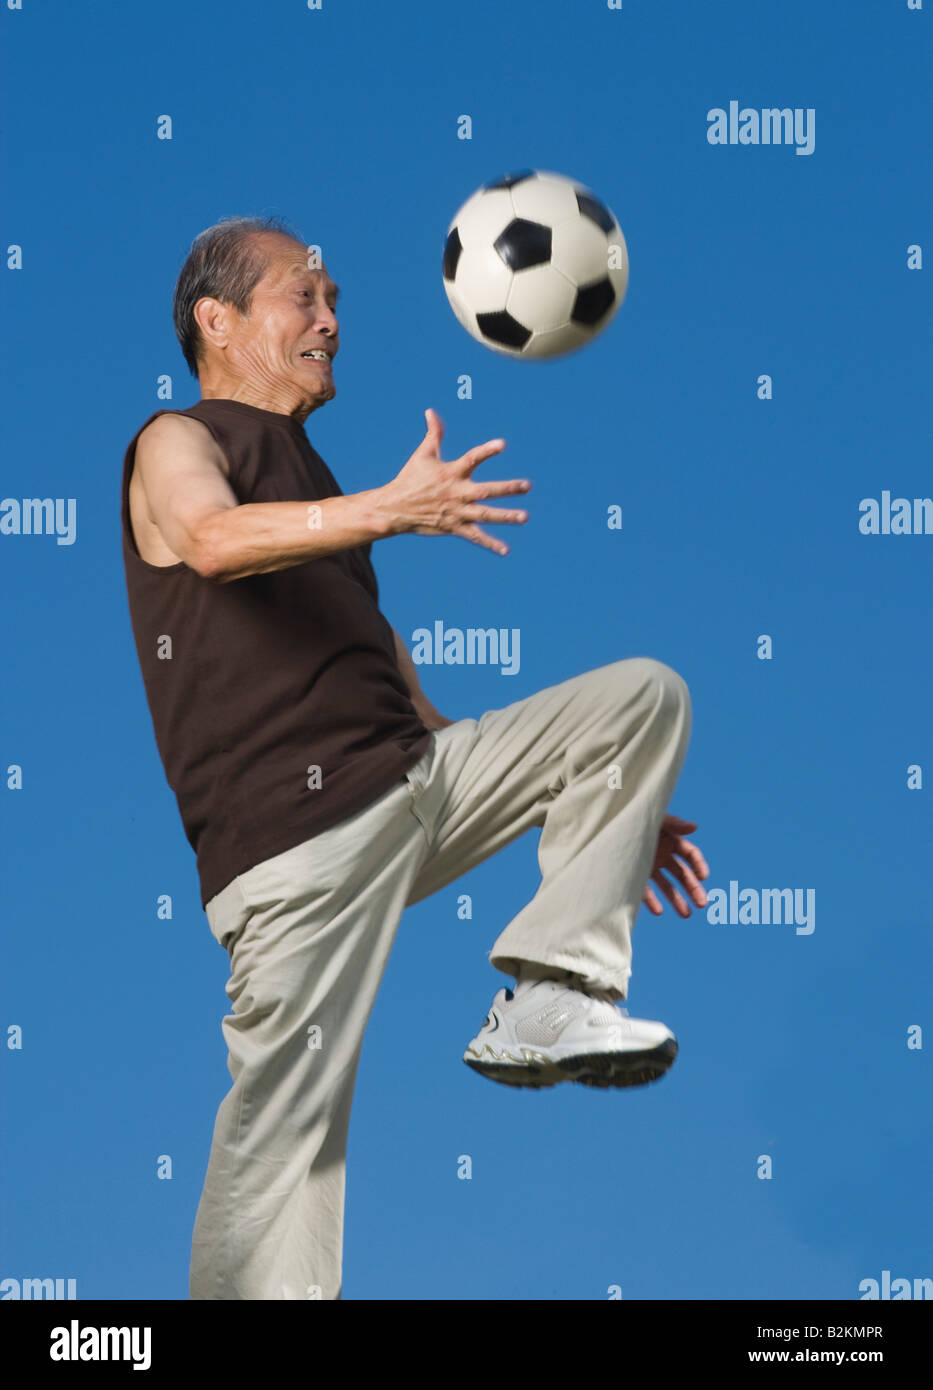 Low angle view of a senior man jouer avec un ballon de foot Banque D'Images